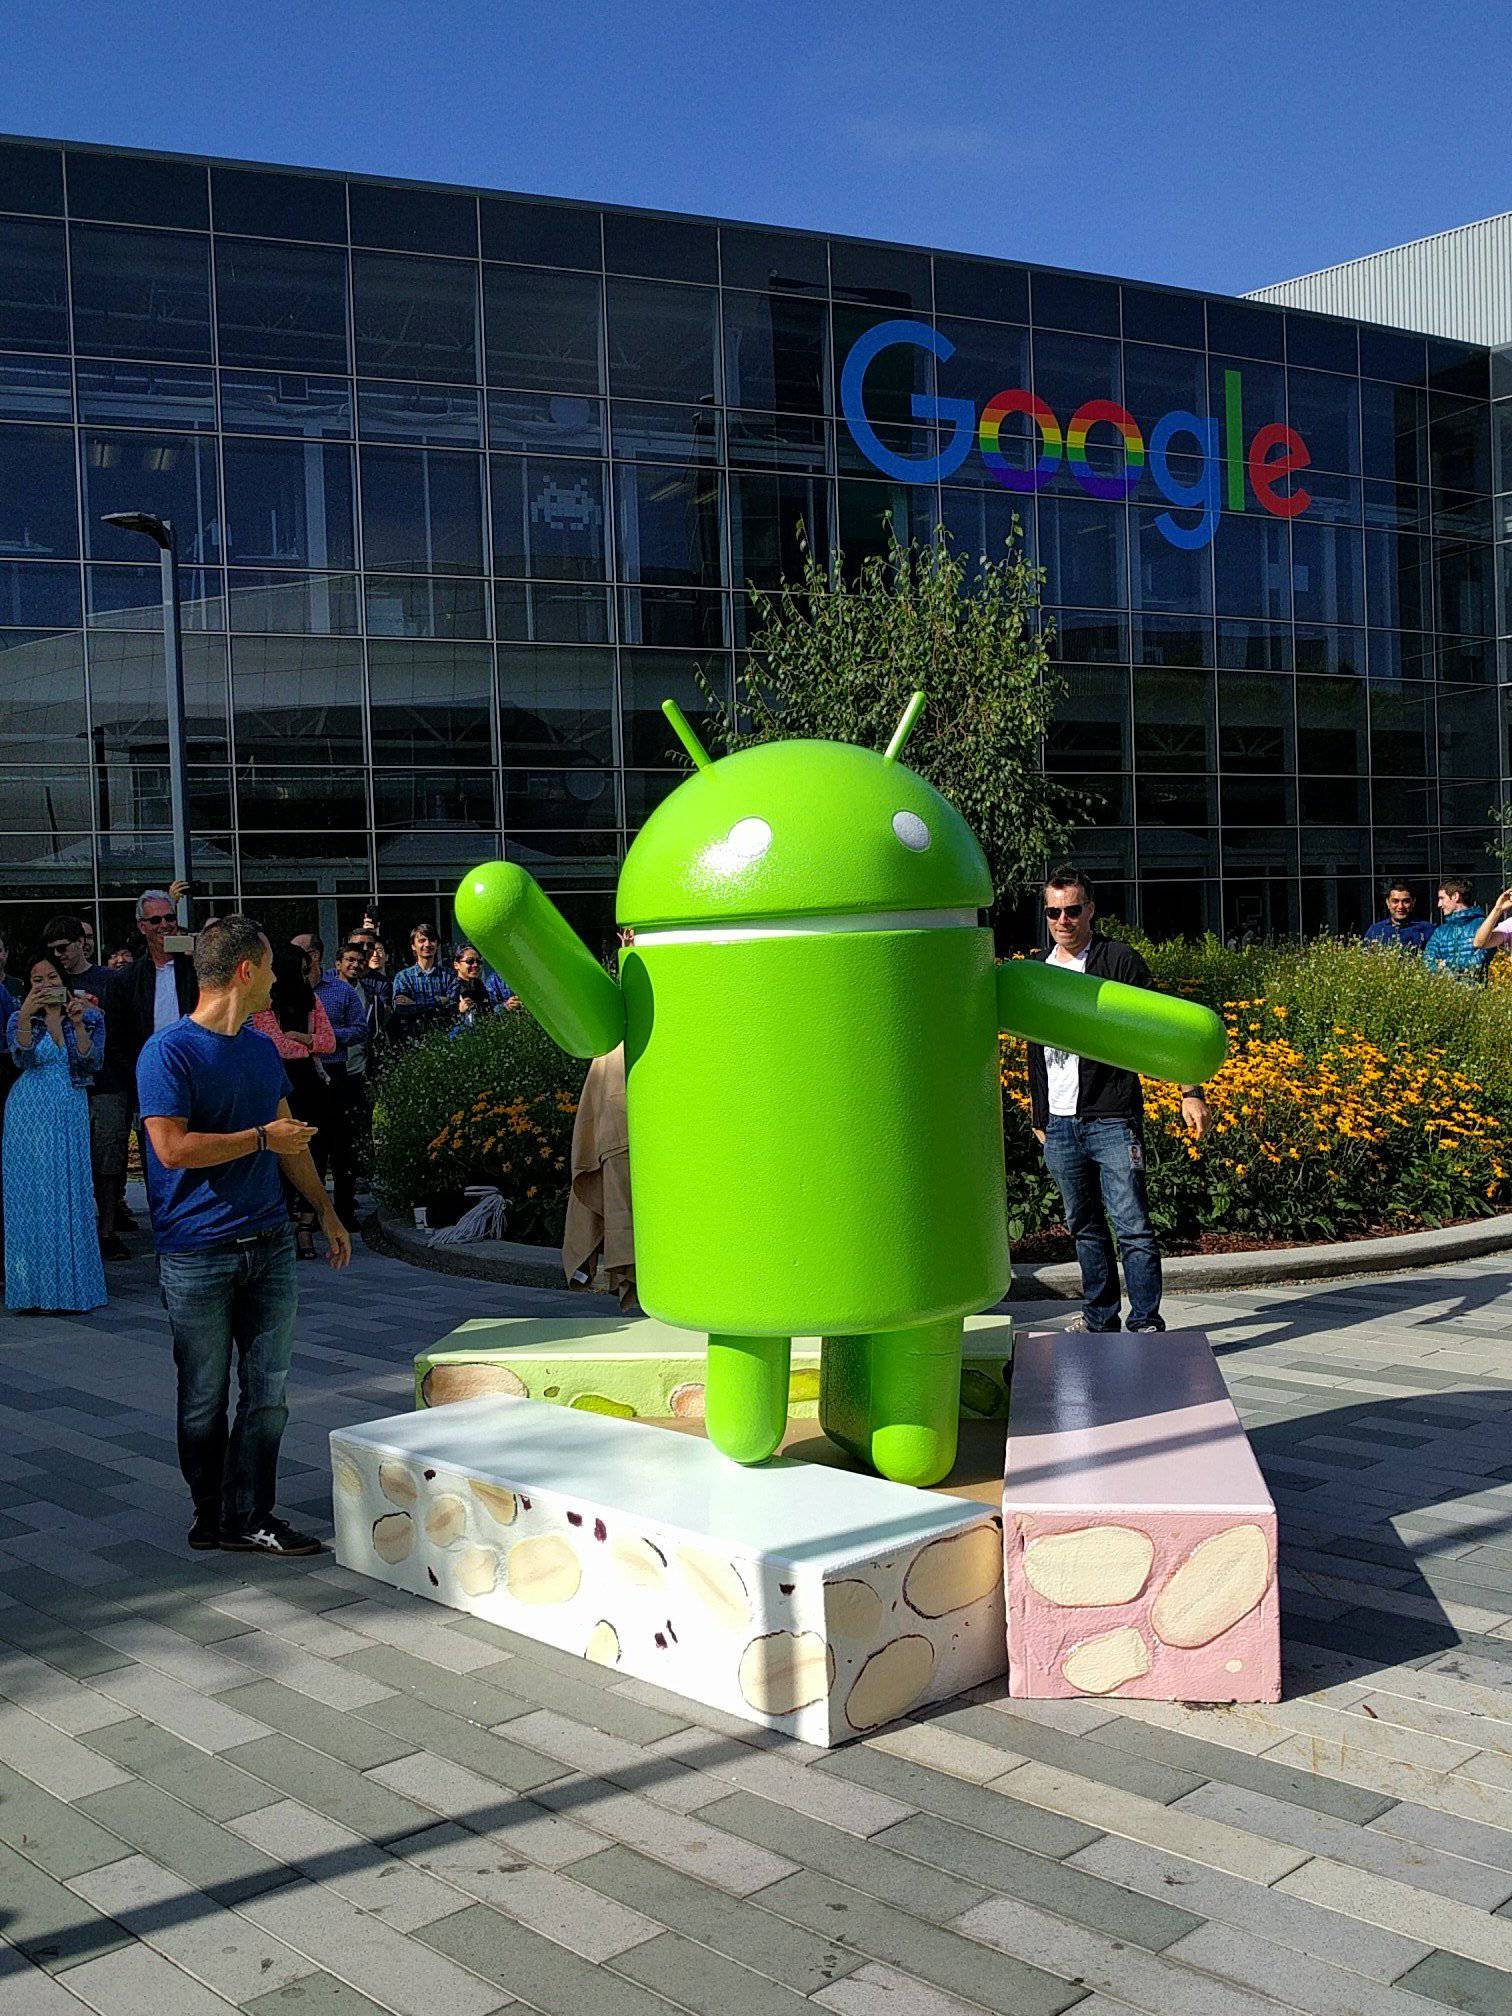 Sljedeći Android zvat će se Nougat: Je li to najbolji izbor?